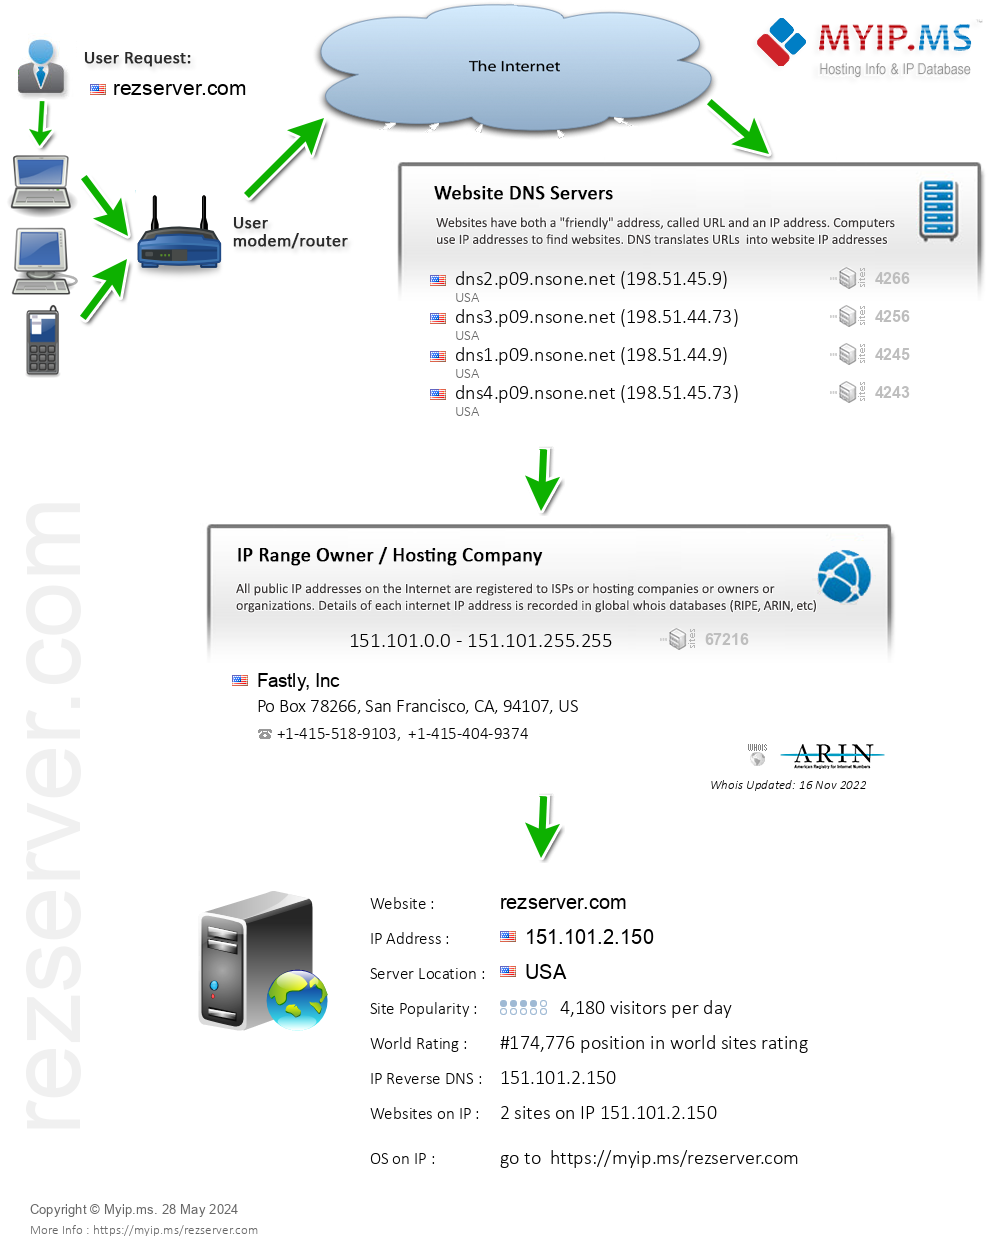 Rezserver.com - Website Hosting Visual IP Diagram